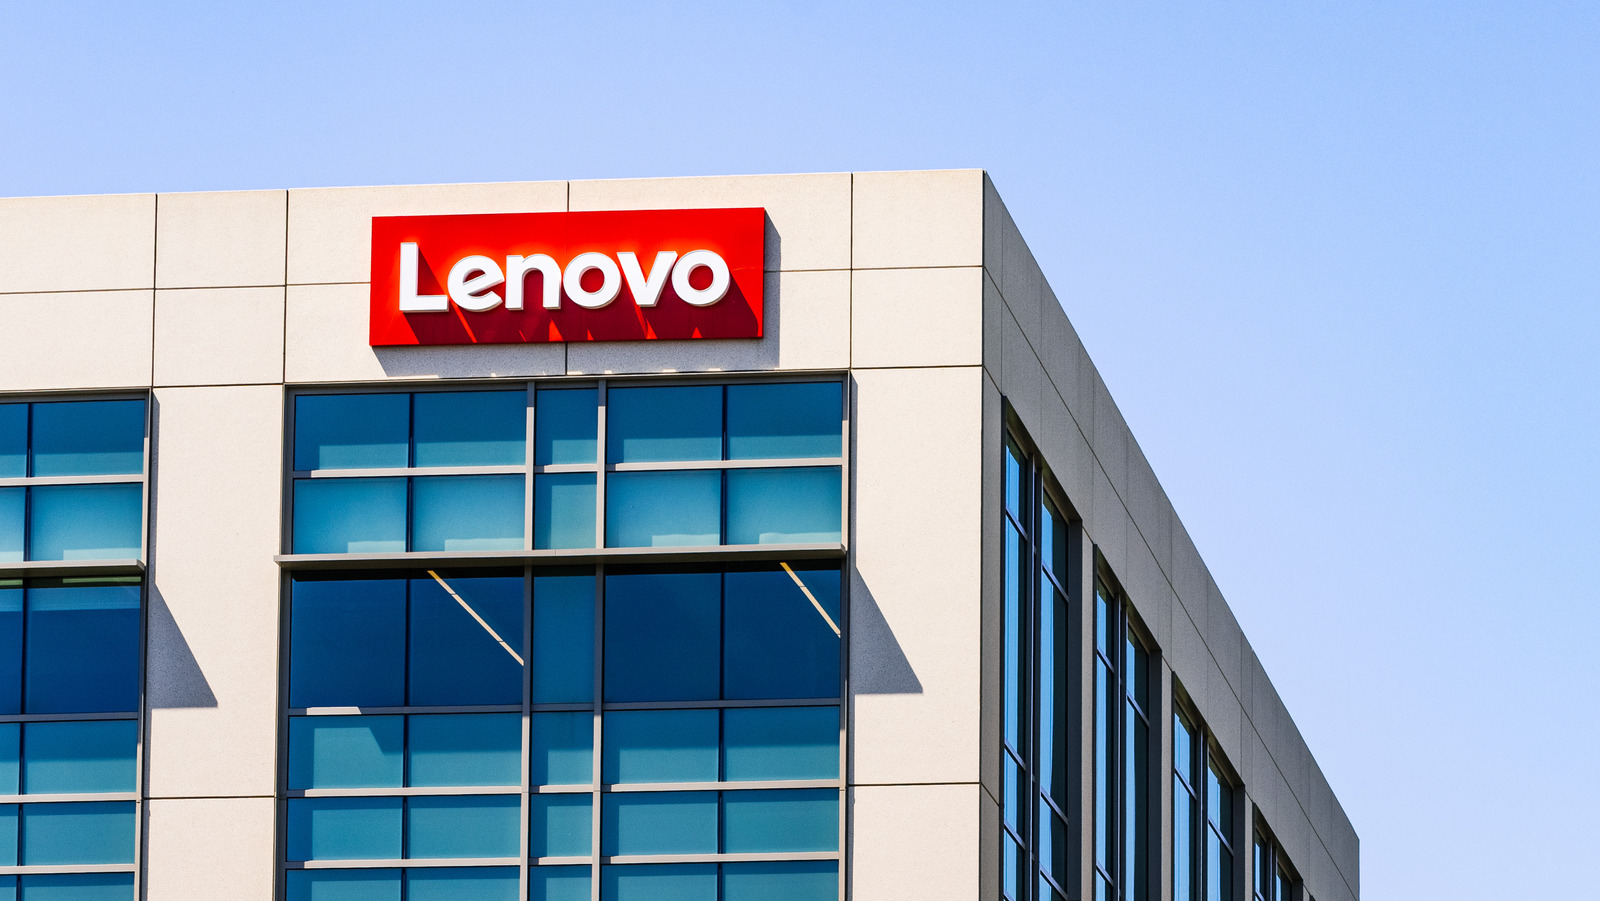 Aquí es donde se fabrican hoy los productos Lenovo